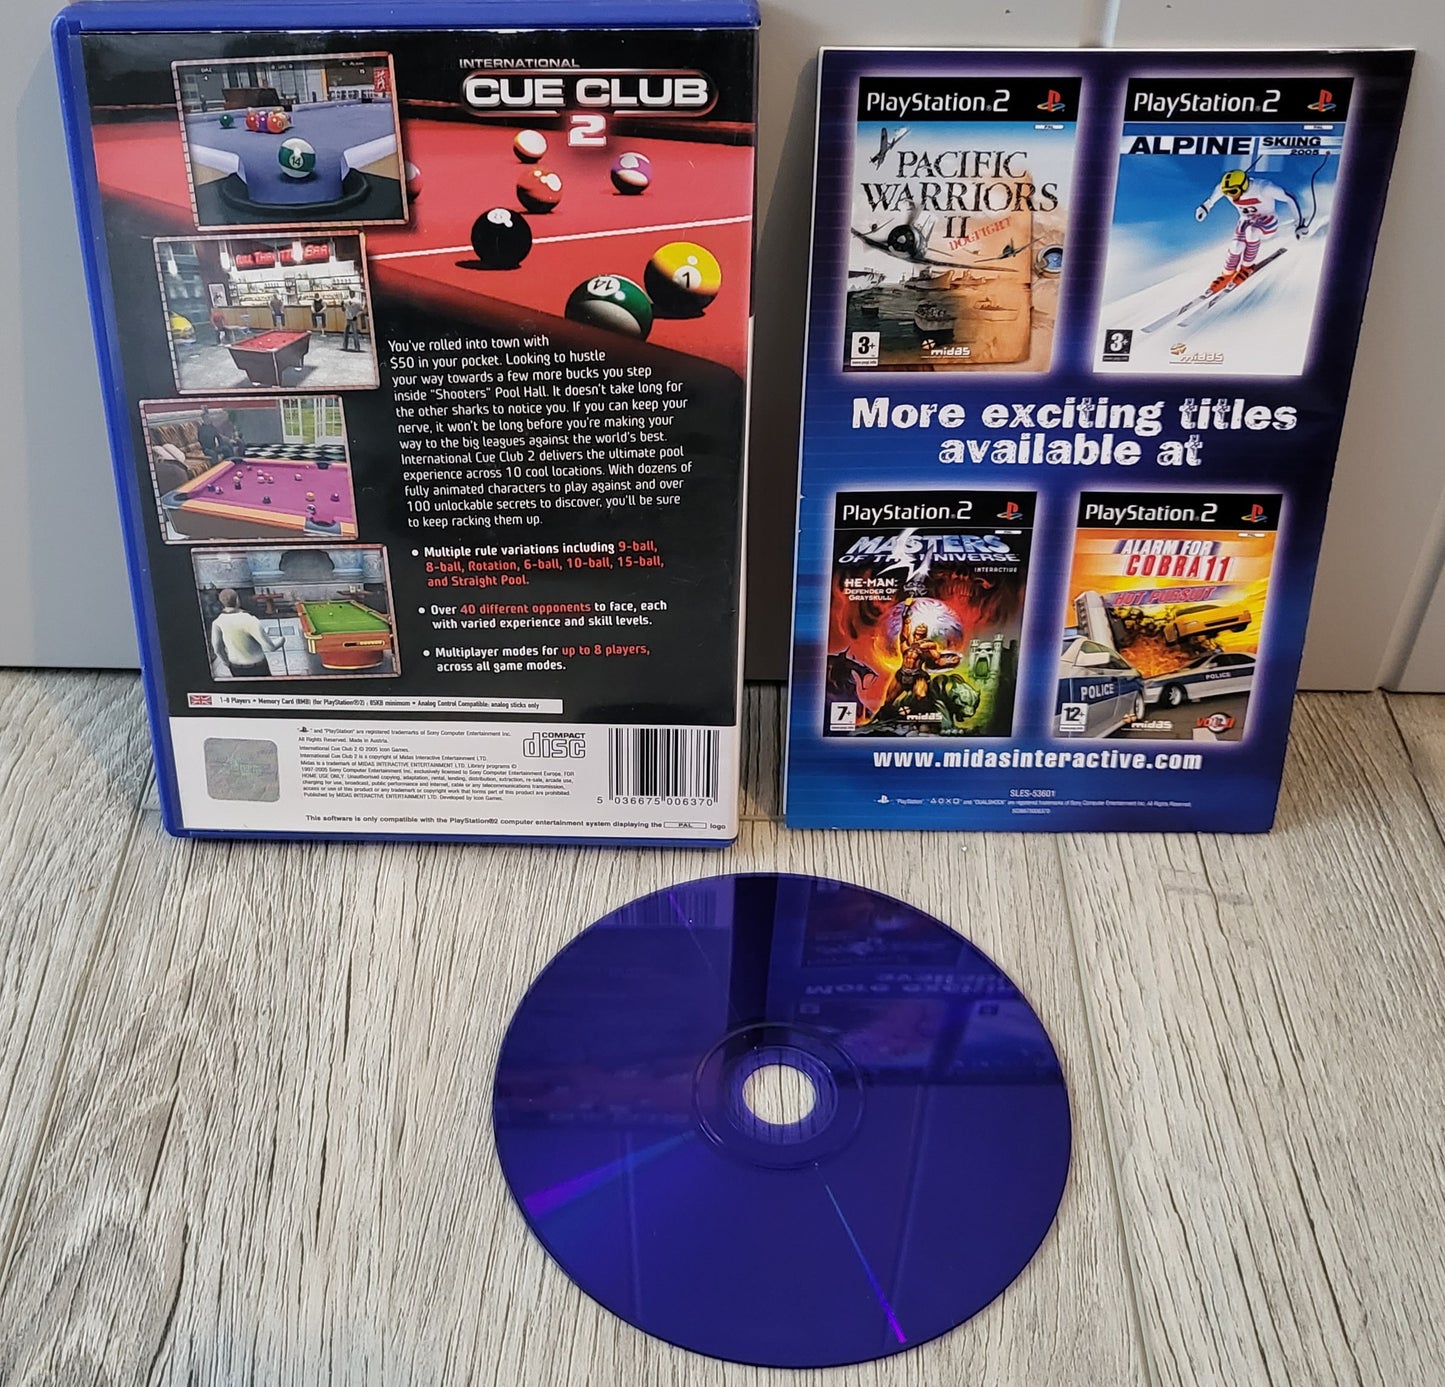 International Cue Club 2 Sony Playstation 2 (PS2) Game